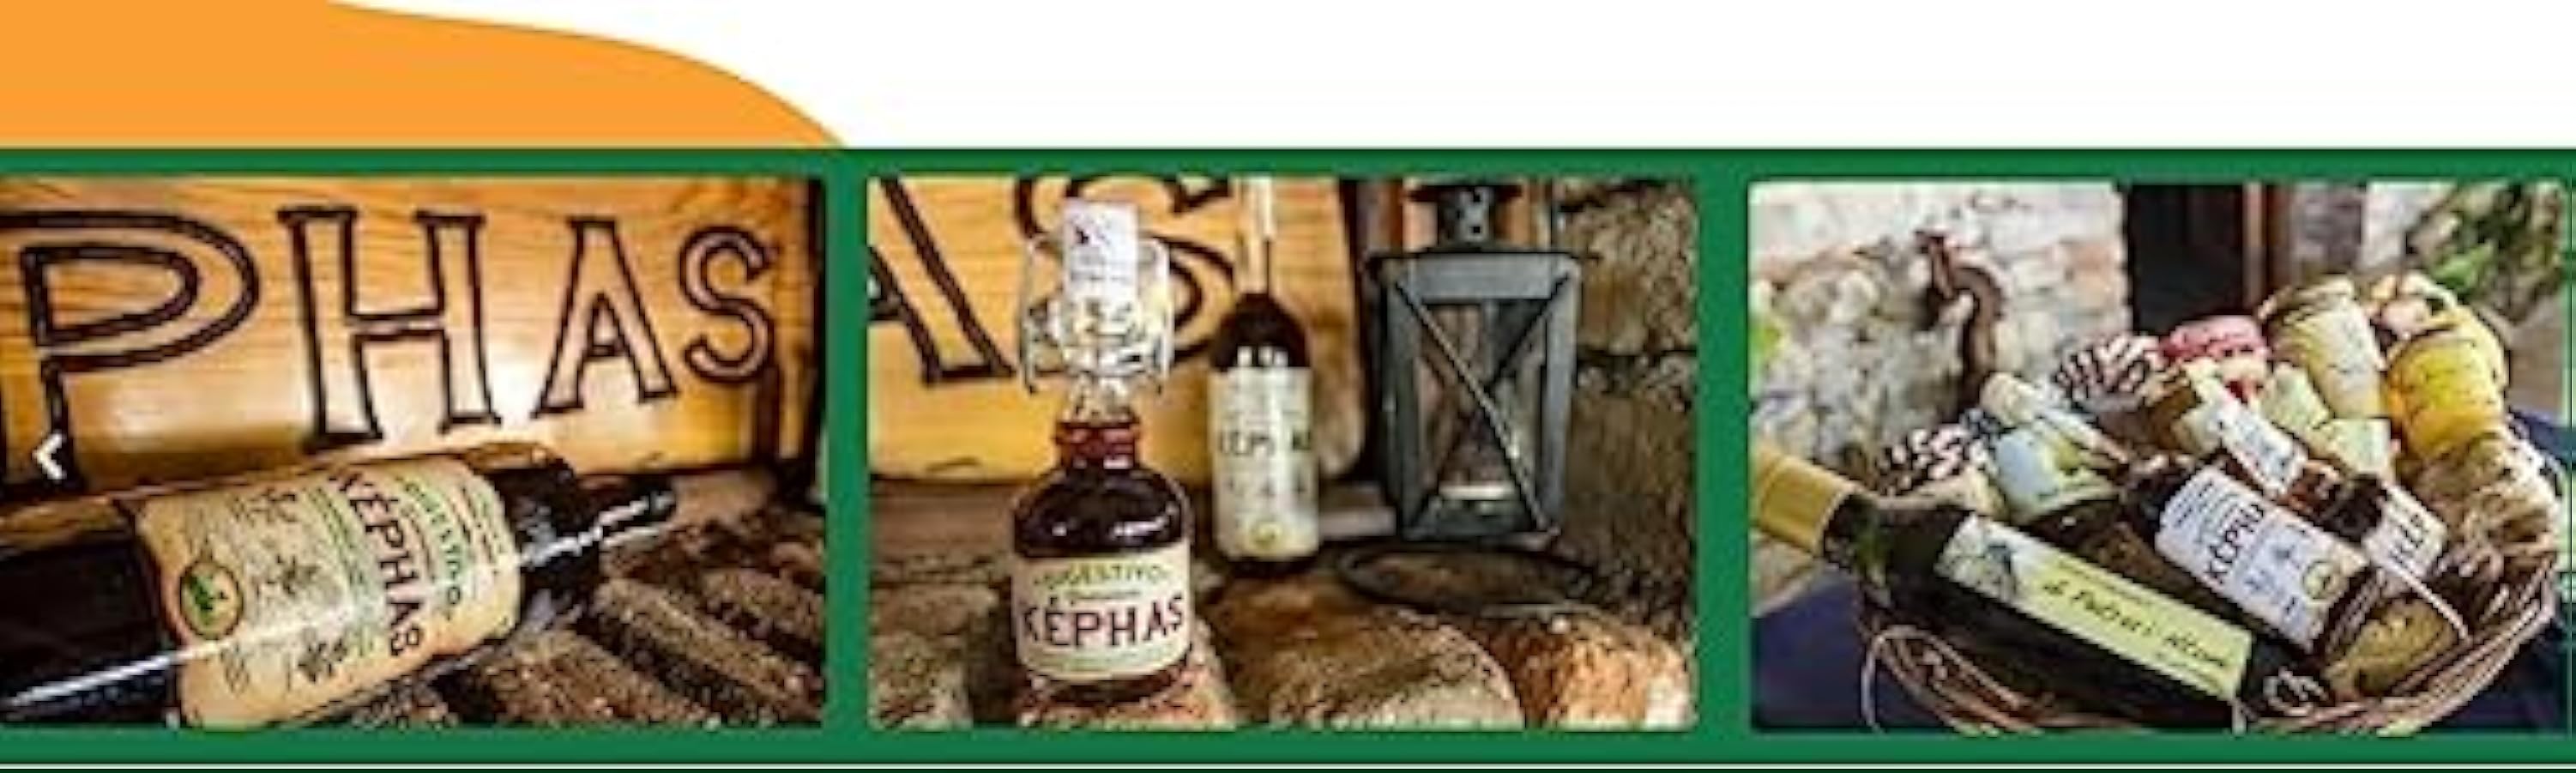 Amaro Képhas, Liquore Digestivo Grecanico alle erbe, Calabrese, Formato Convenienza 1 Lt Di Petru I Ntoni (6) 79152148